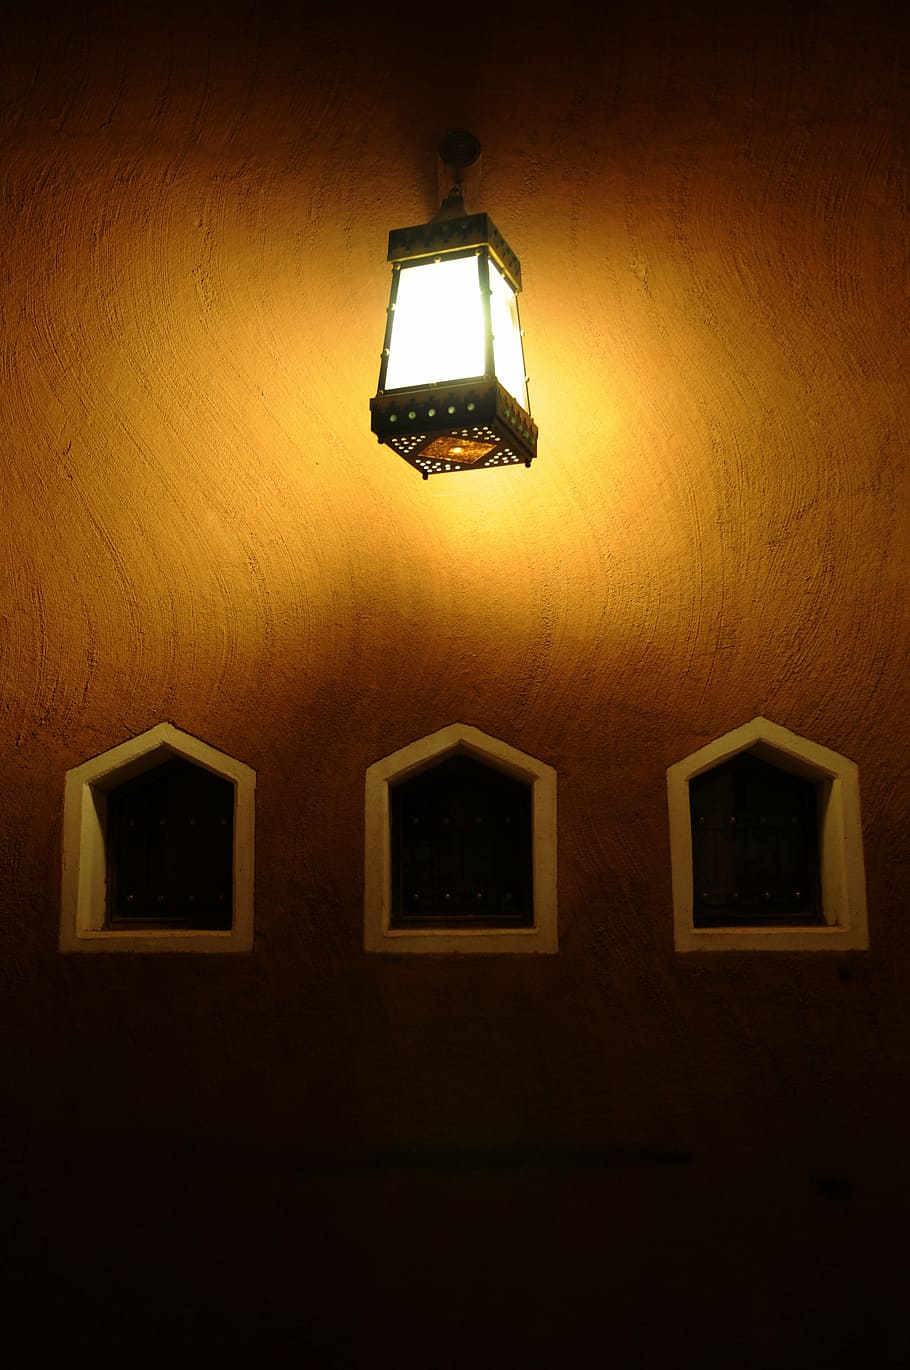 mud, light, dark, traditional, old, saudi arabia, mud house, illuminated, lighting equipment, indoors